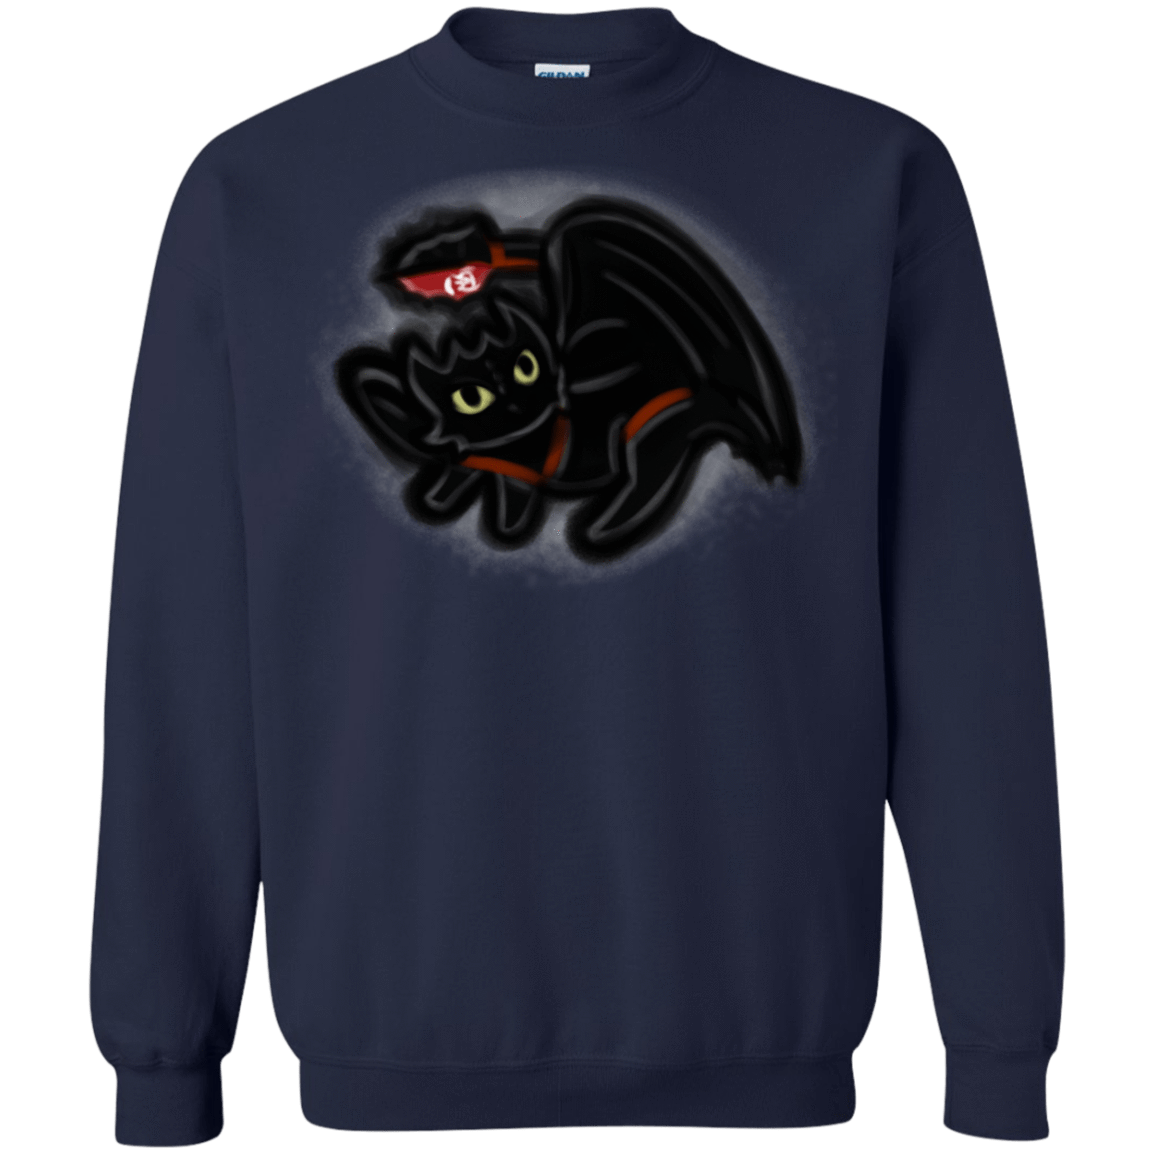 Sweatshirts Navy / S Toothless Simba Crewneck Sweatshirt